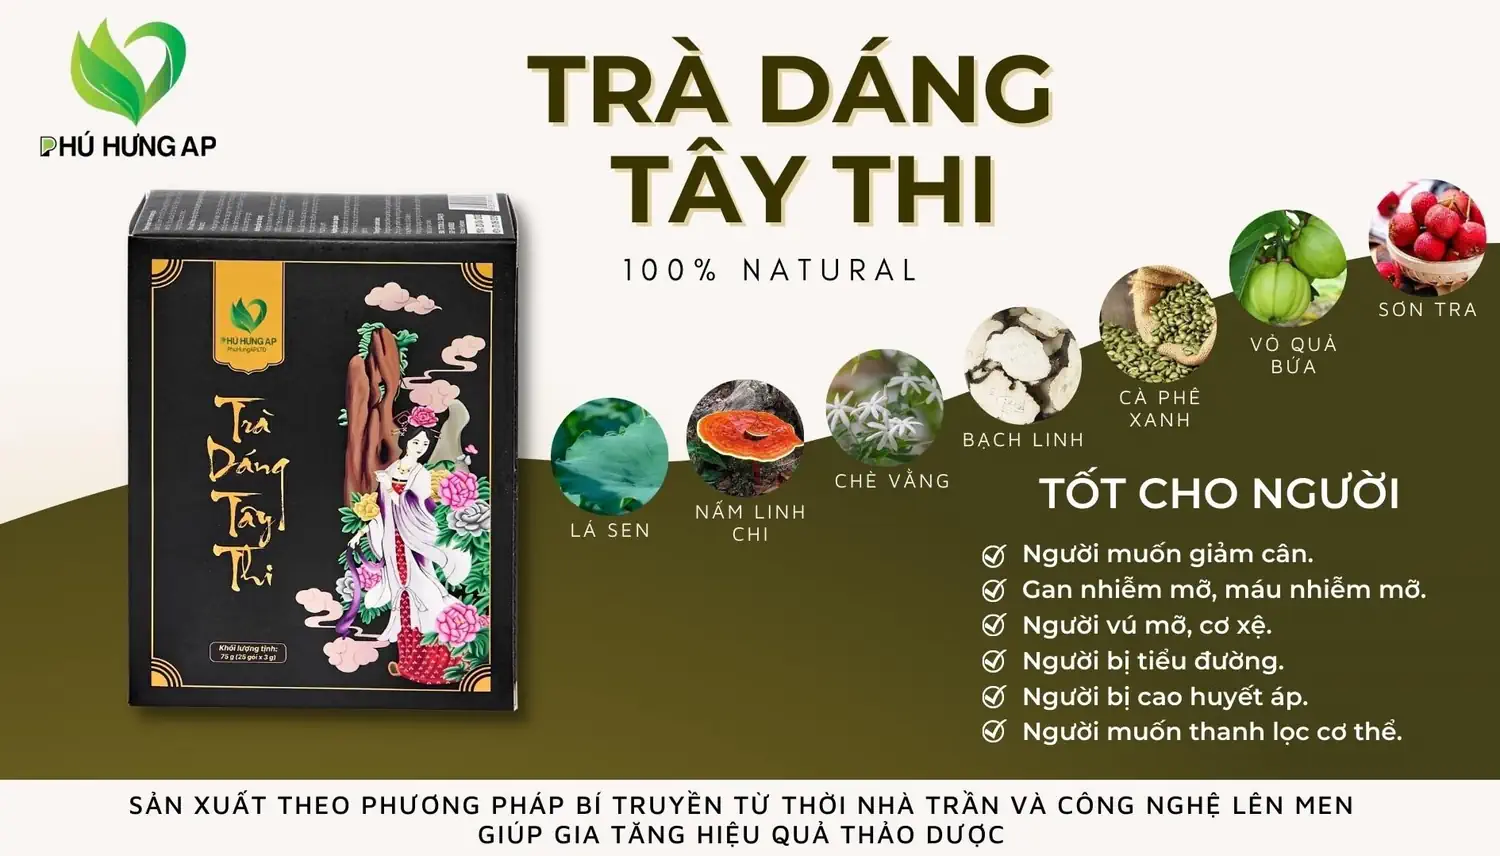 Thành phần và công dụng Trà Dáng Tây Thi AP Phú Hưng chính hãng giá tốt - Kuchen Vietnam